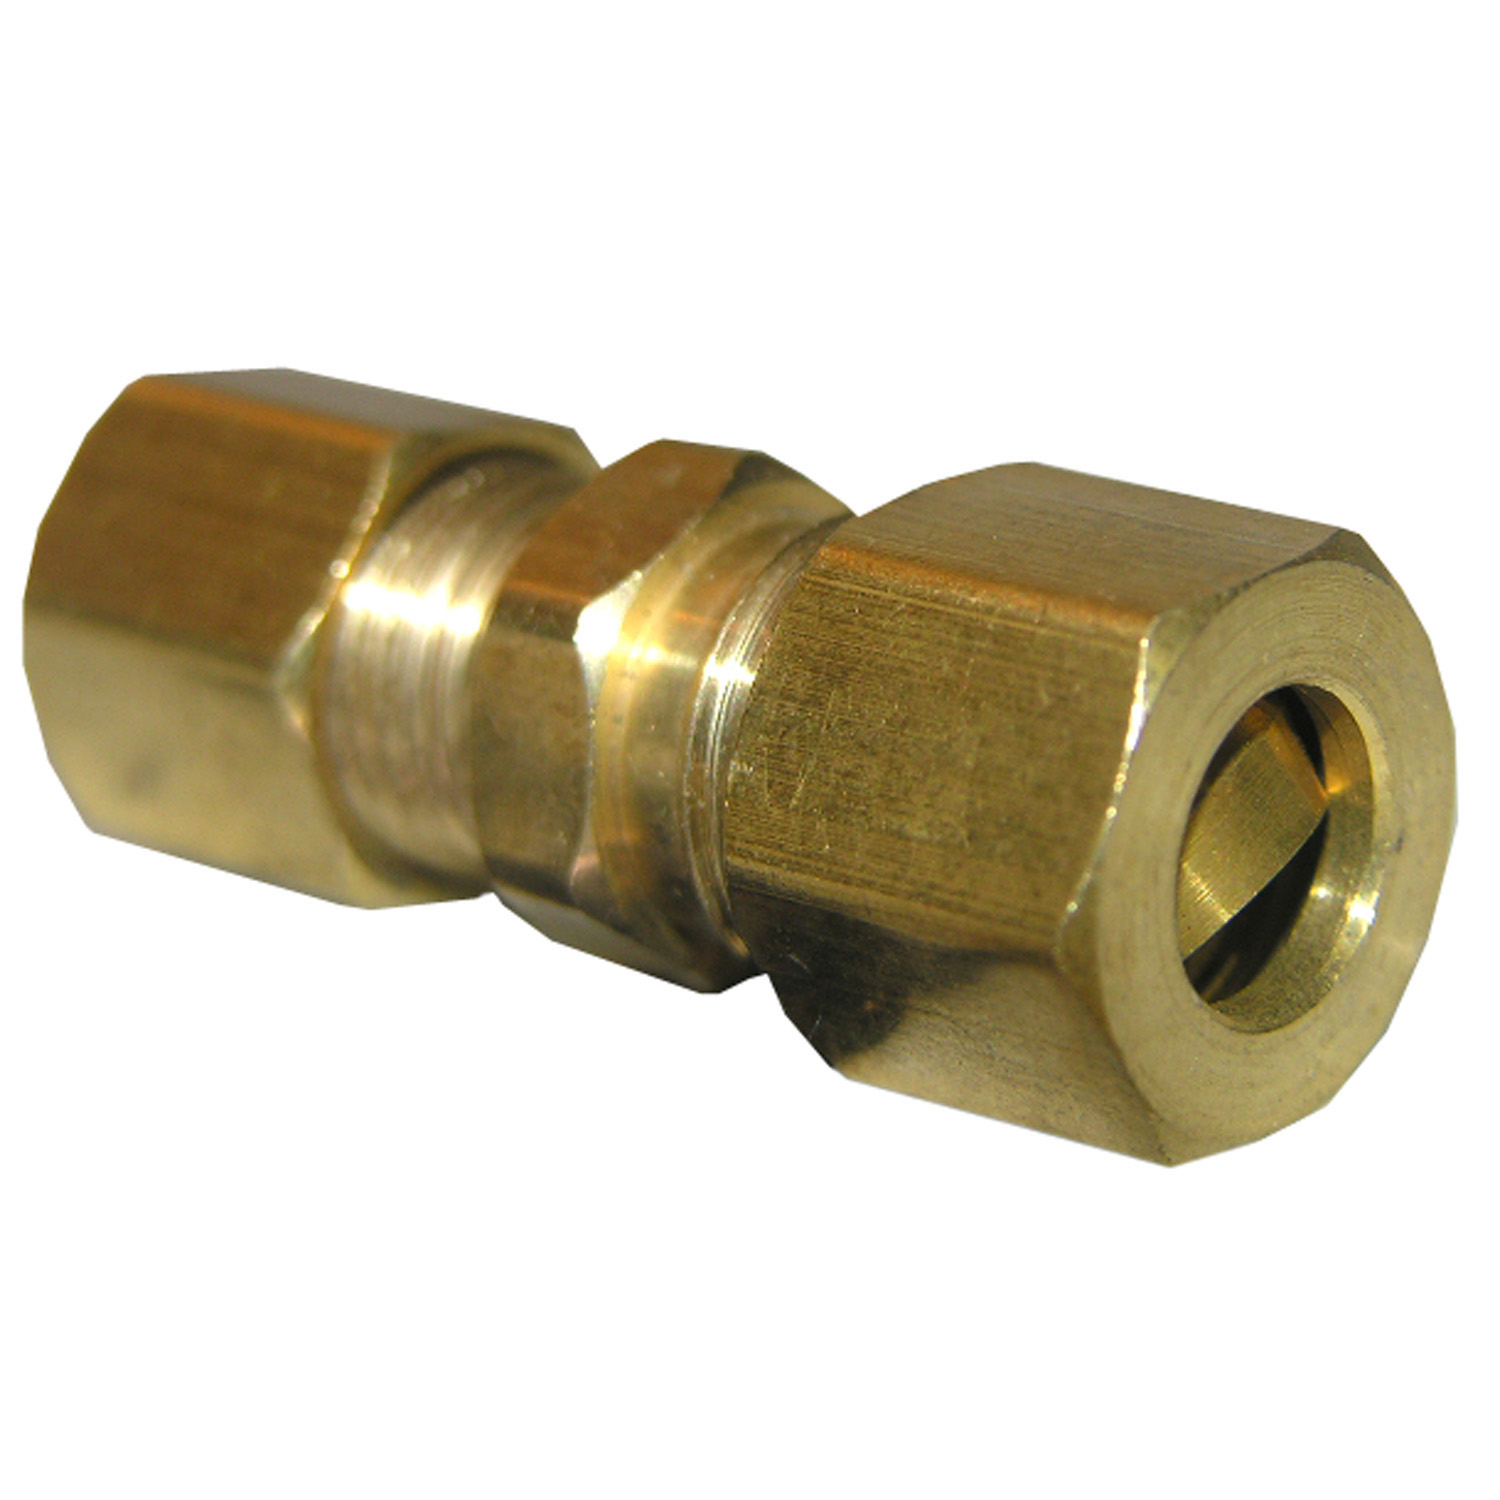 17-6201 Pipe Union, 1/8 in, Compression, Brass, 100 psi Pressure